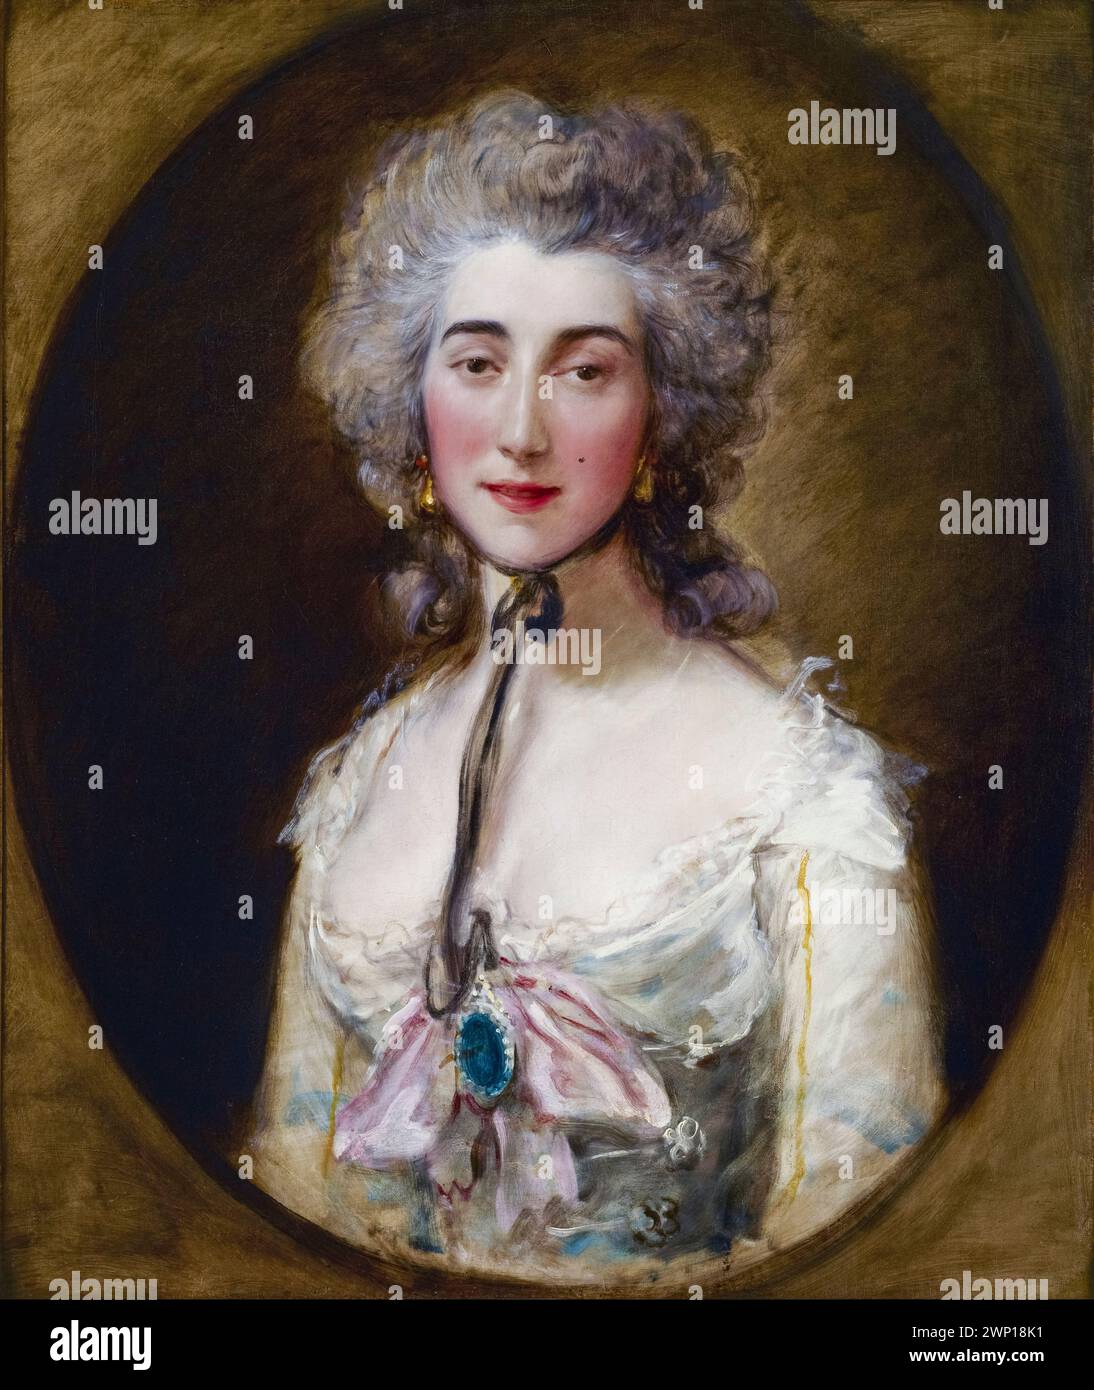 Grace Elliott (vers 1754-1823), courtisane écossaise, écrivaine et espionne résidant à Paris pendant la Révolution française. Maîtresse du duc d'Orléans et du futur George IV du Royaume-Uni, portrait peint à l'huile sur toile par Thomas Gainsborough, vers 1782 Banque D'Images